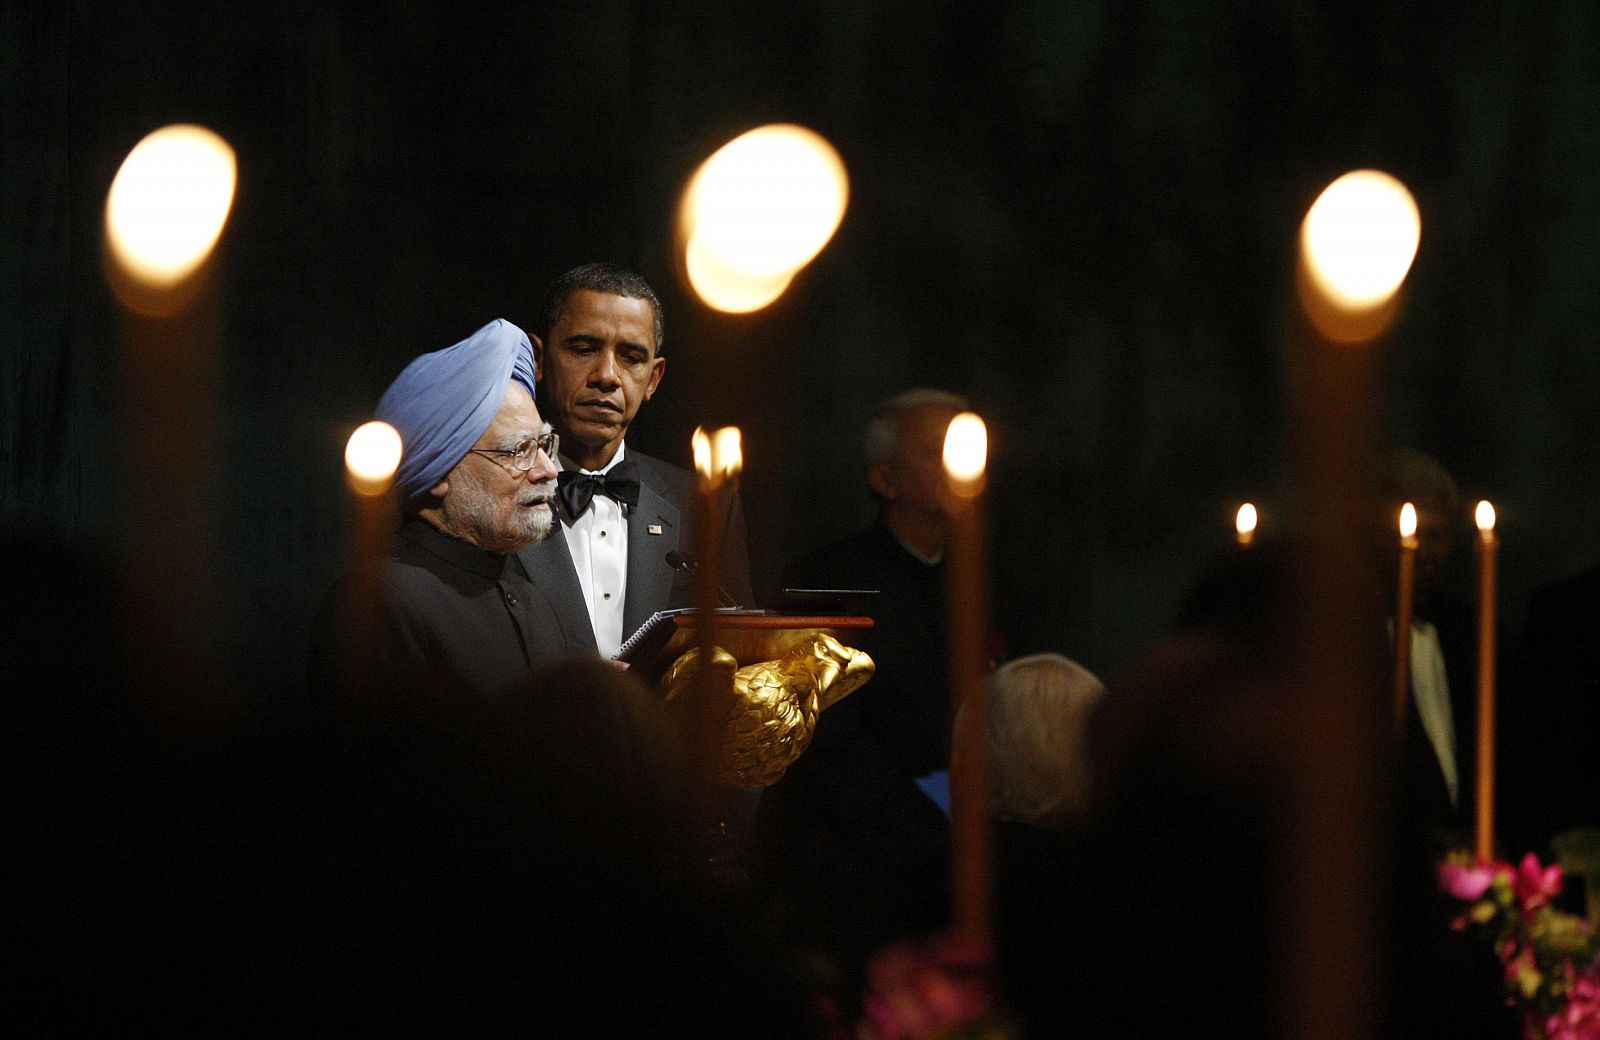 El presidente Obama y el primer ministro de la India, Manmohan Singh, bridan en una cena oficial en la Casa Blanca